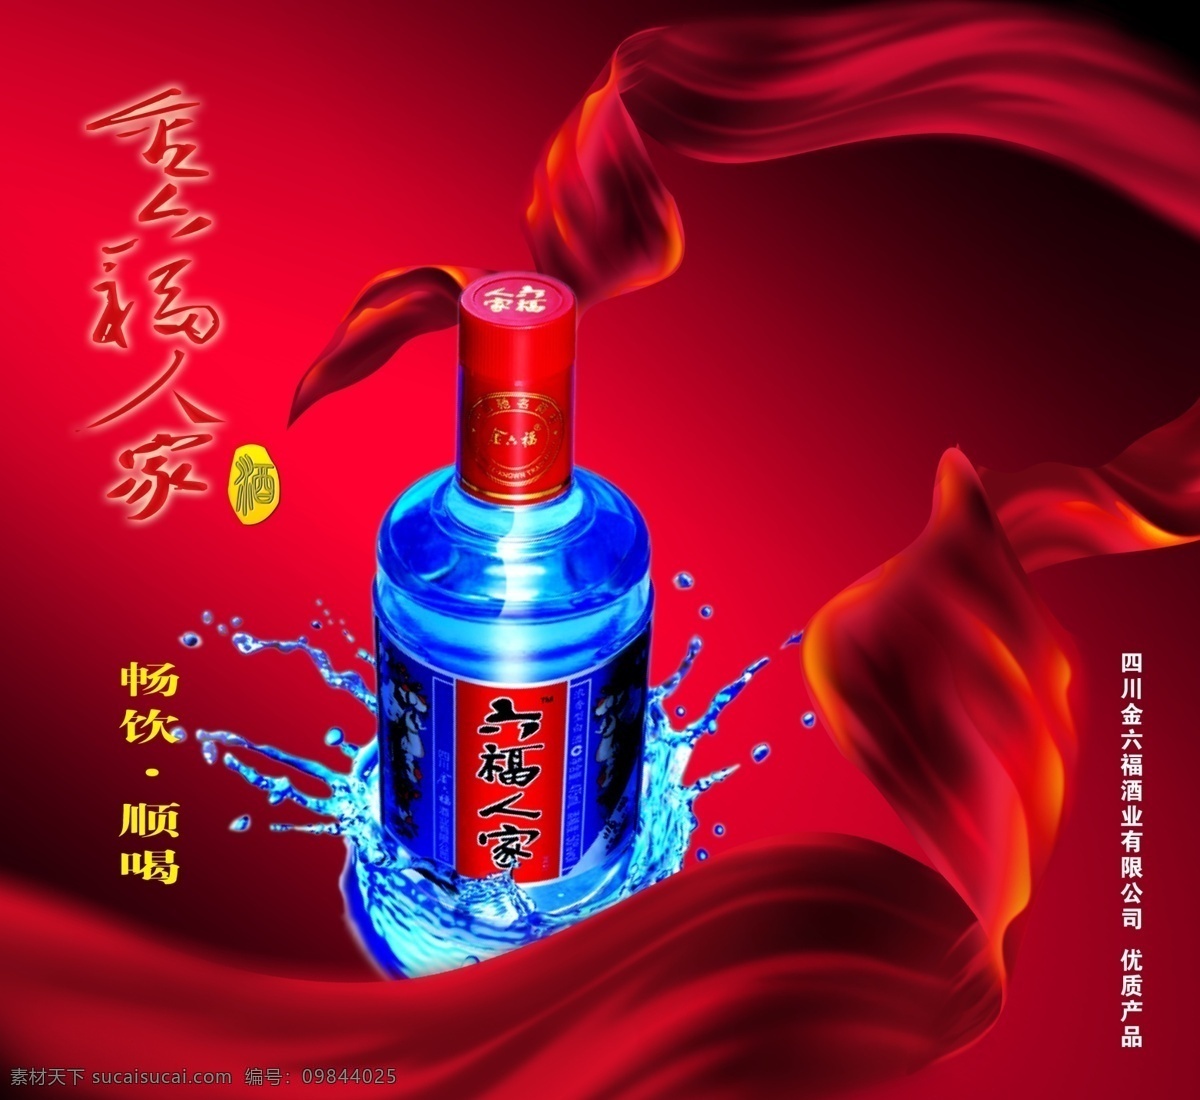 六福人家烧酒 海报 酒广告海报 简约风格 创意海报 酒 红色